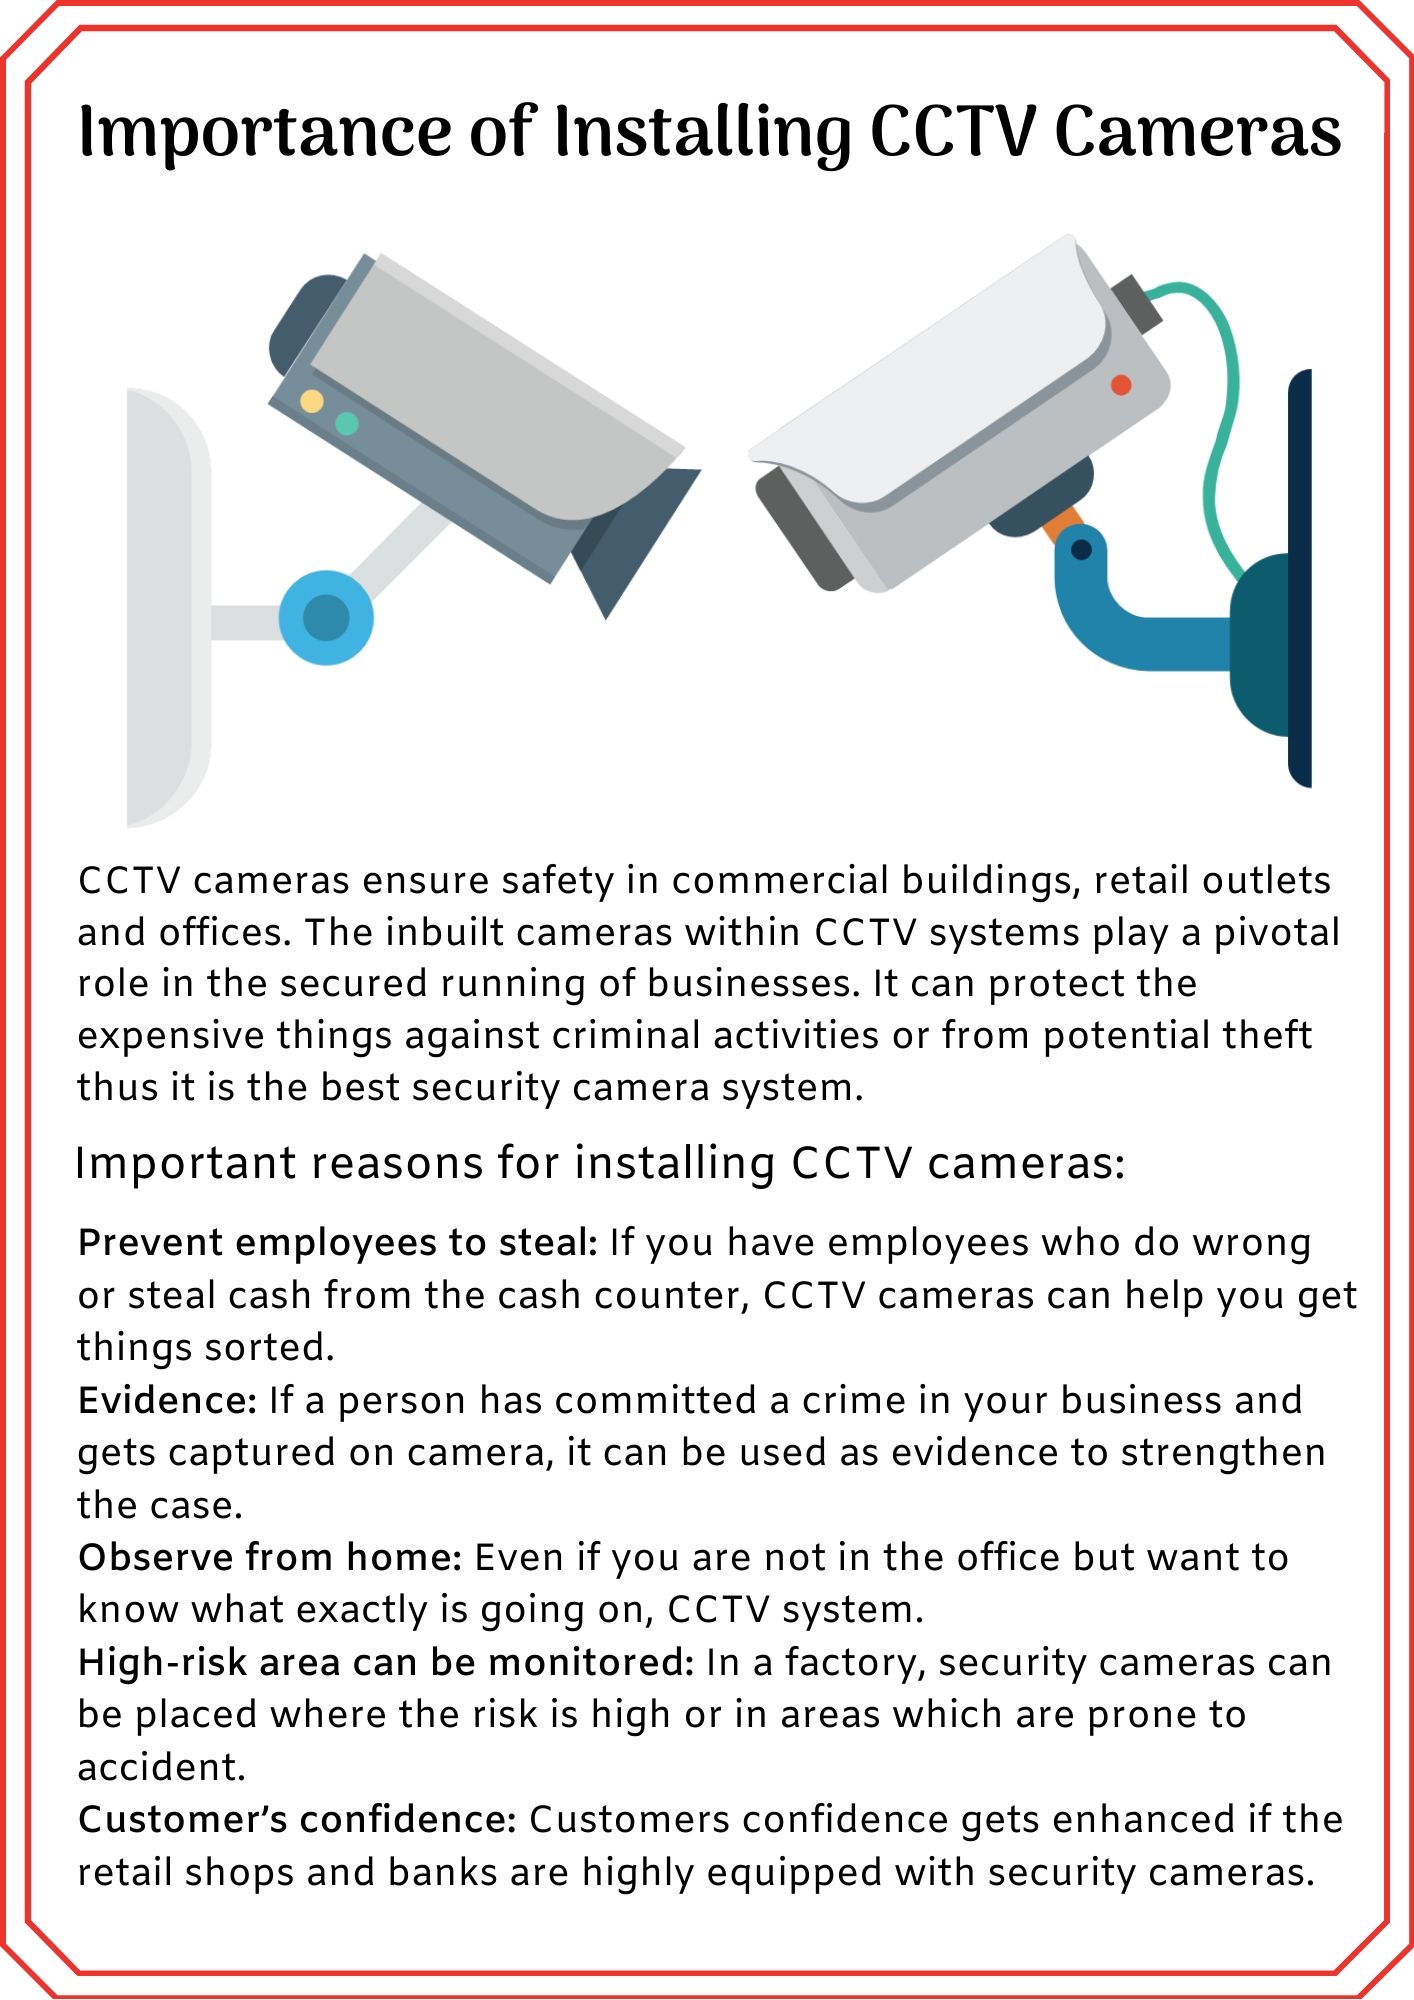 Importance Of Installing CCTV Cameras.jpg